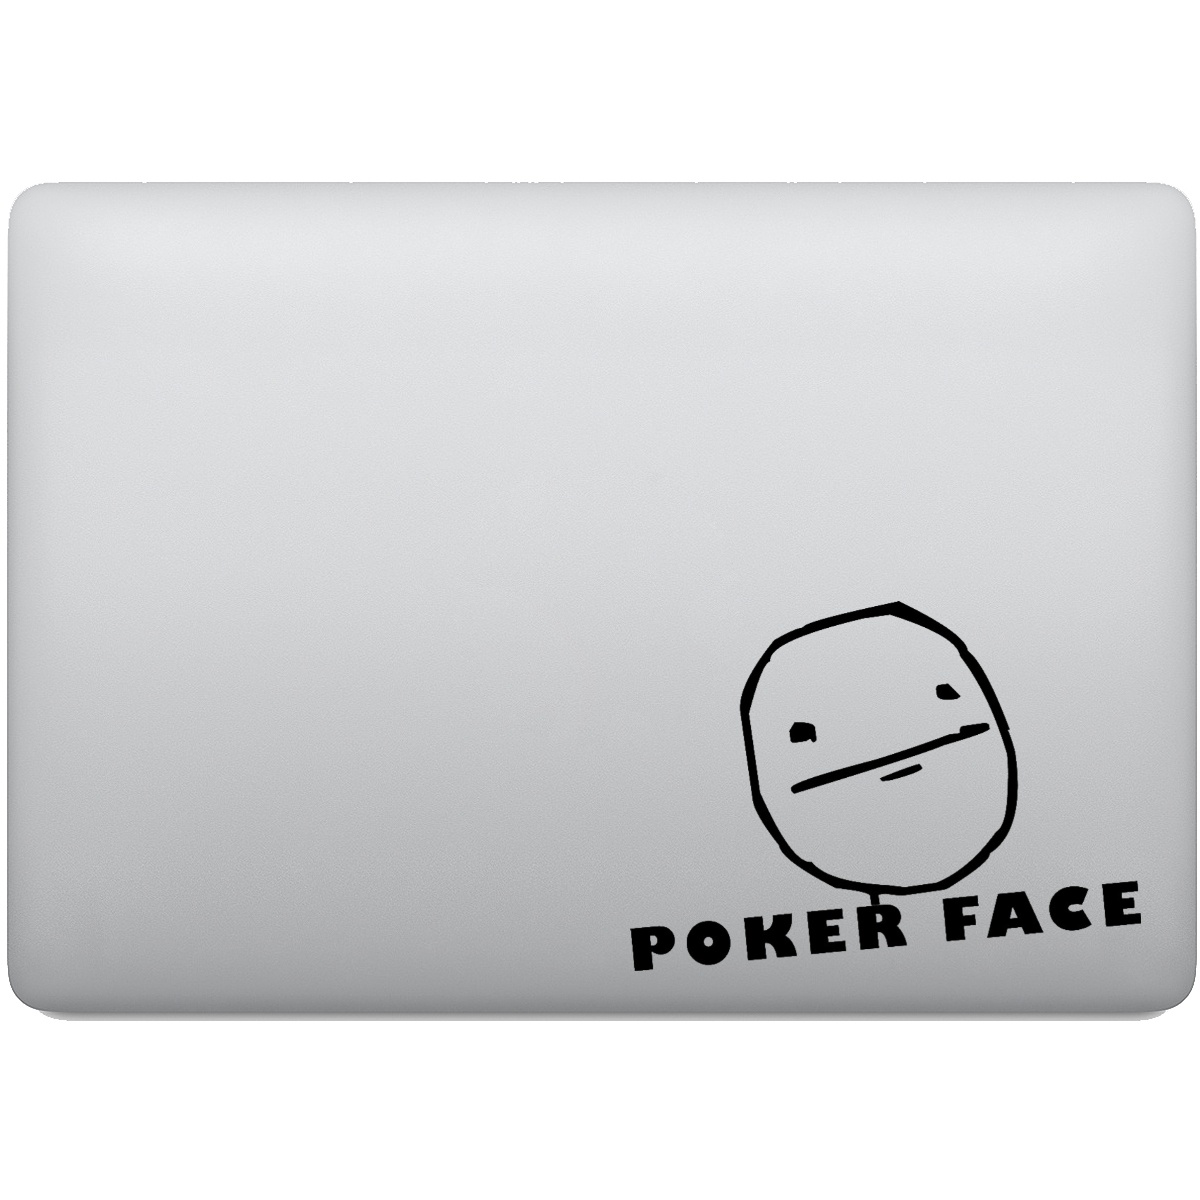 Poker face meme